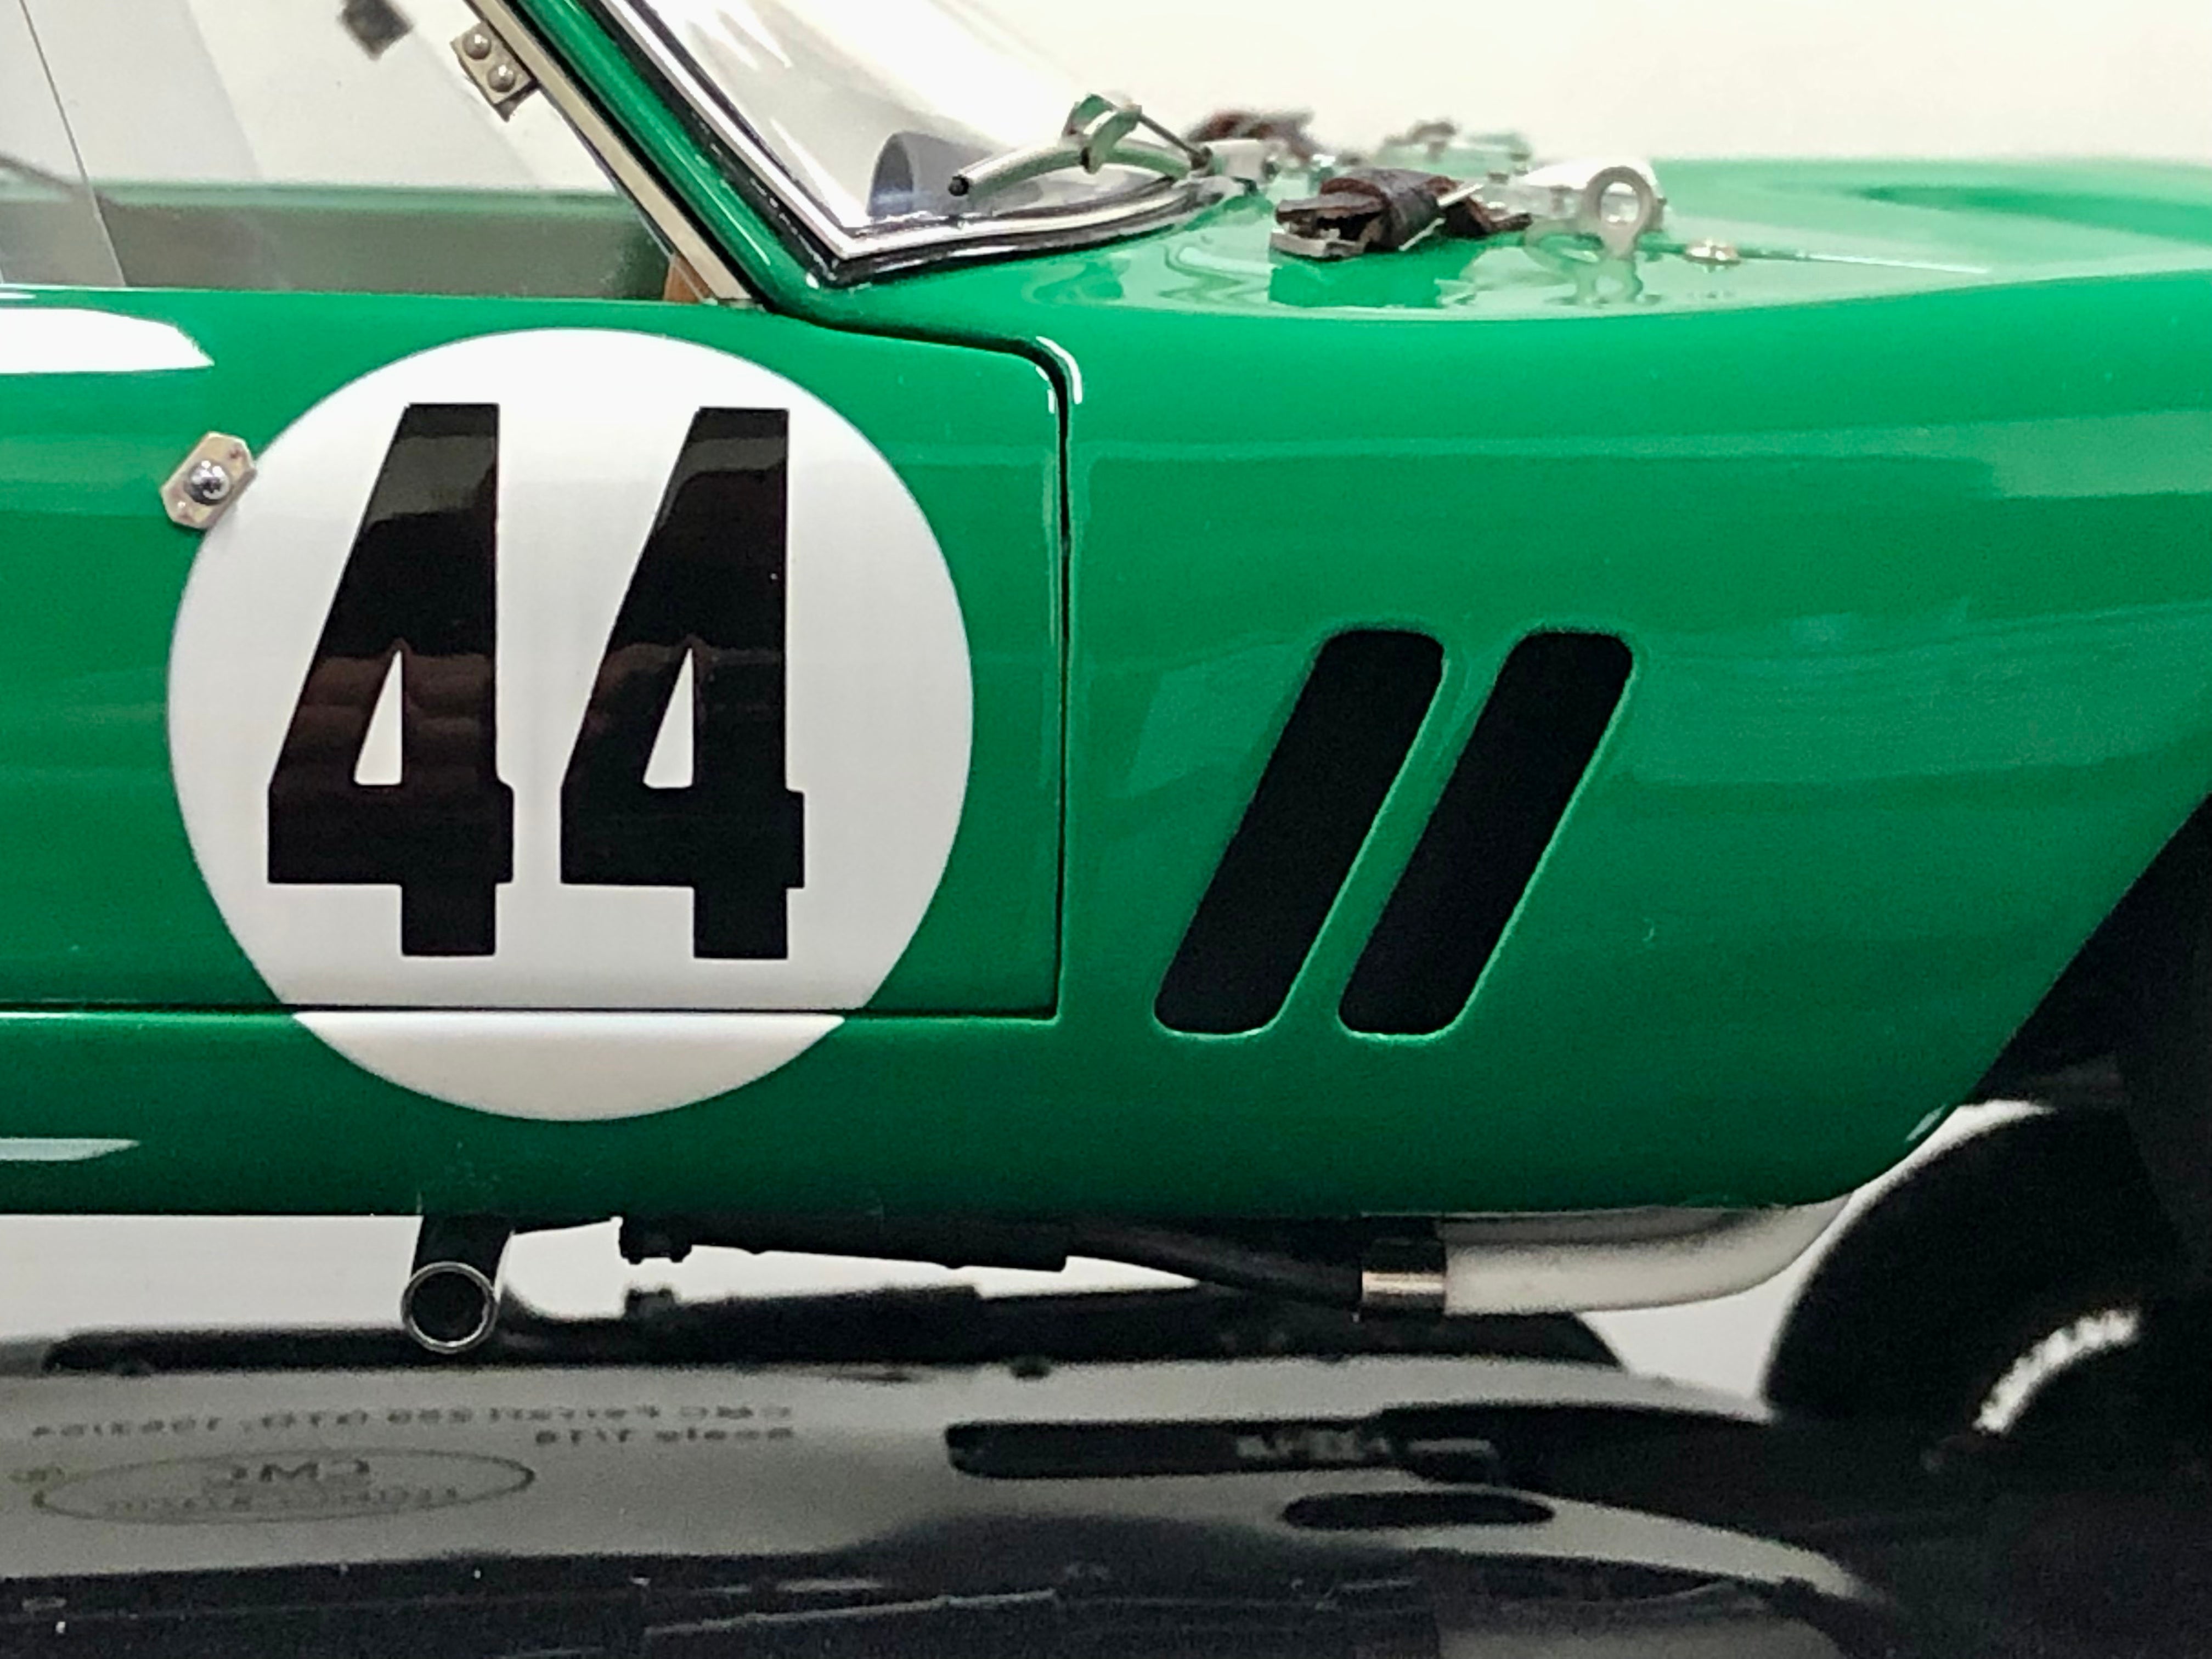 CMC M248 1:18 scale 1962 Ferrari 250 GTO #44 Silverstone 1963